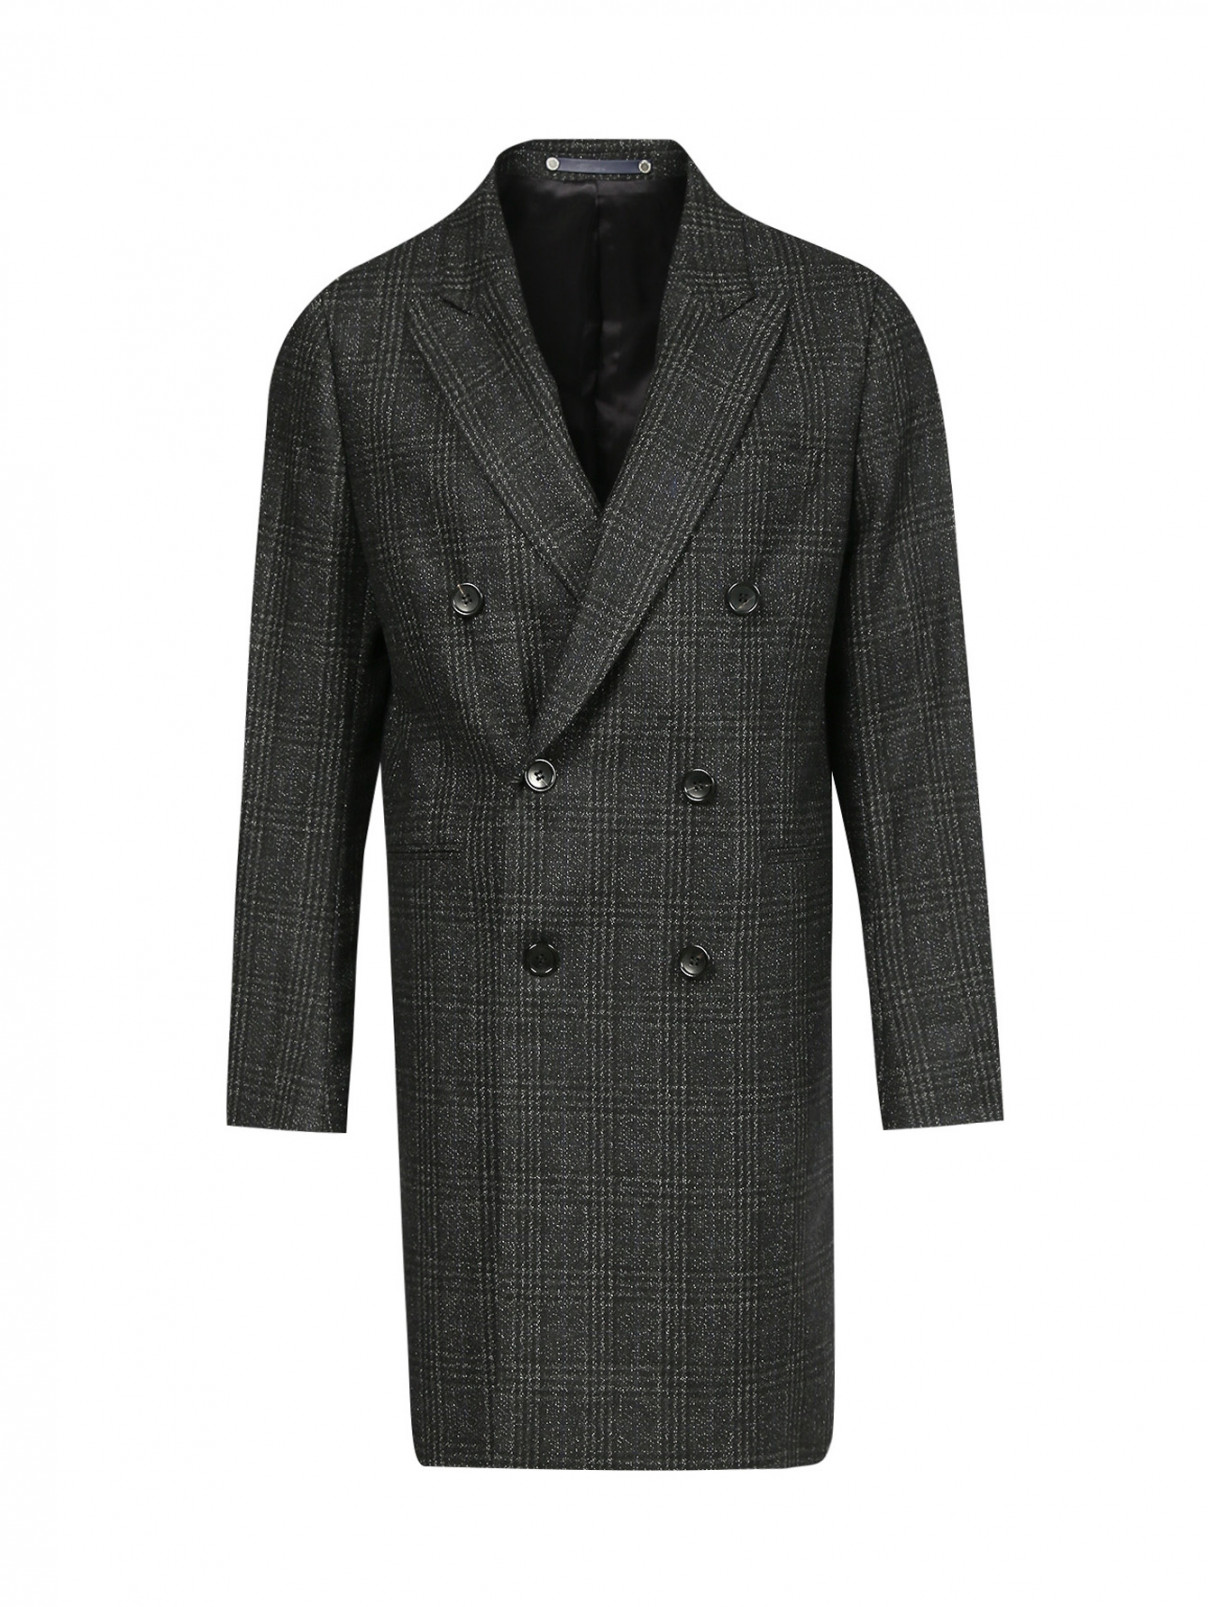 Пальто двубортное из шерсти и хлопка с узором "клетка" Paul Smith  –  Общий вид  – Цвет:  Серый